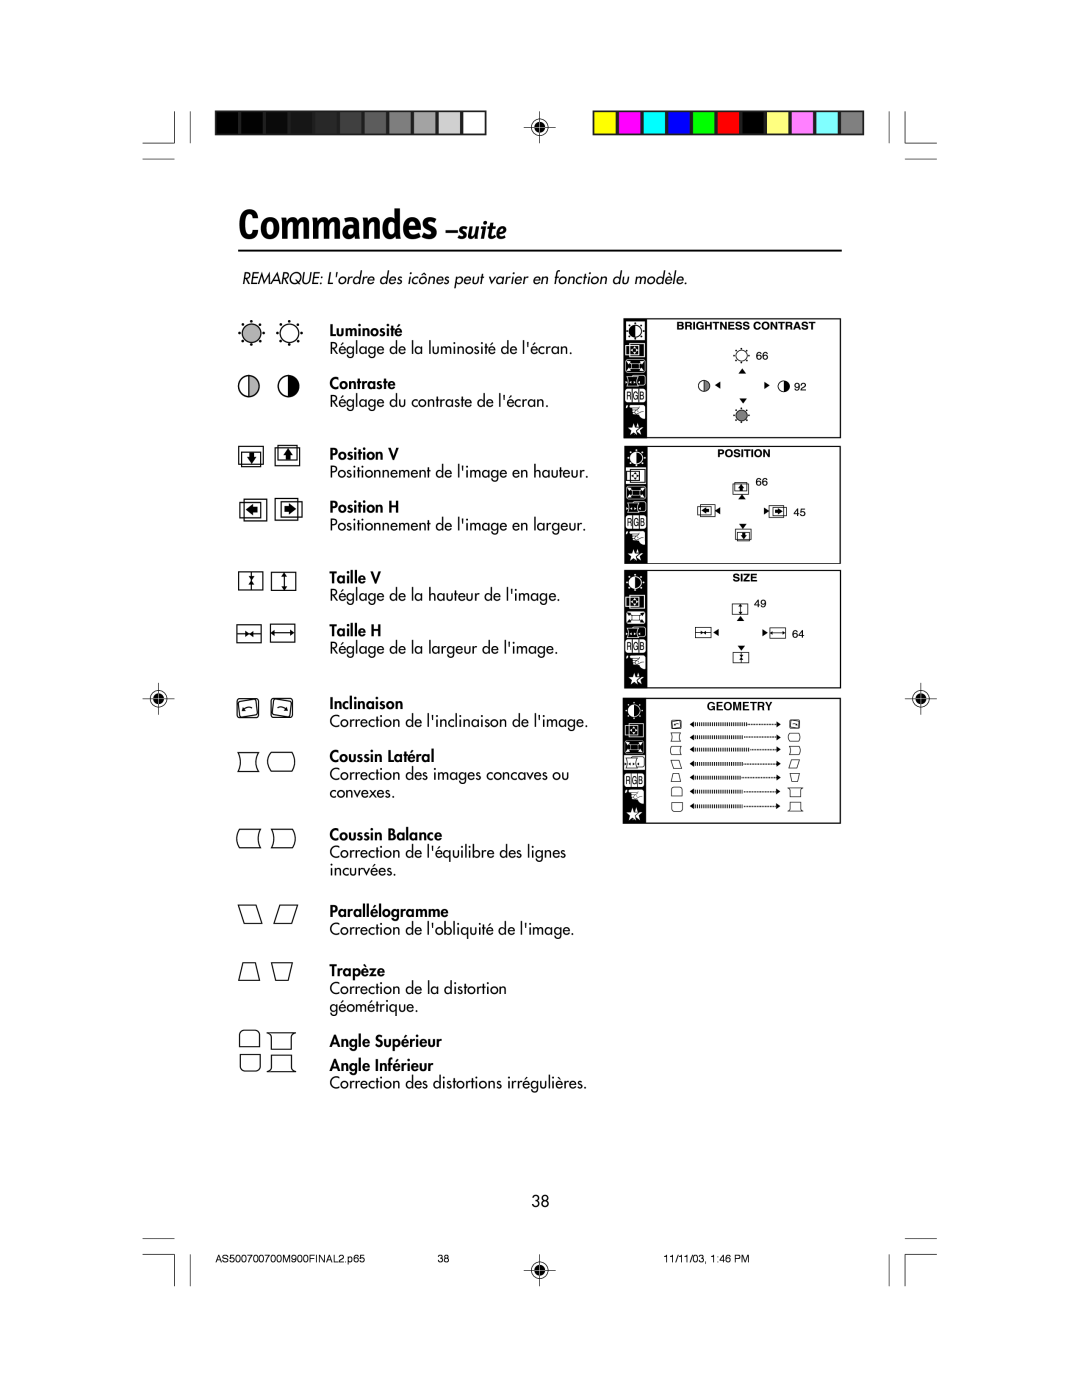 NEC 500, 700, 700M, 900 manual Commandes -suite, REMARQUE Lordre des icnes peut varier en fonction du modle 